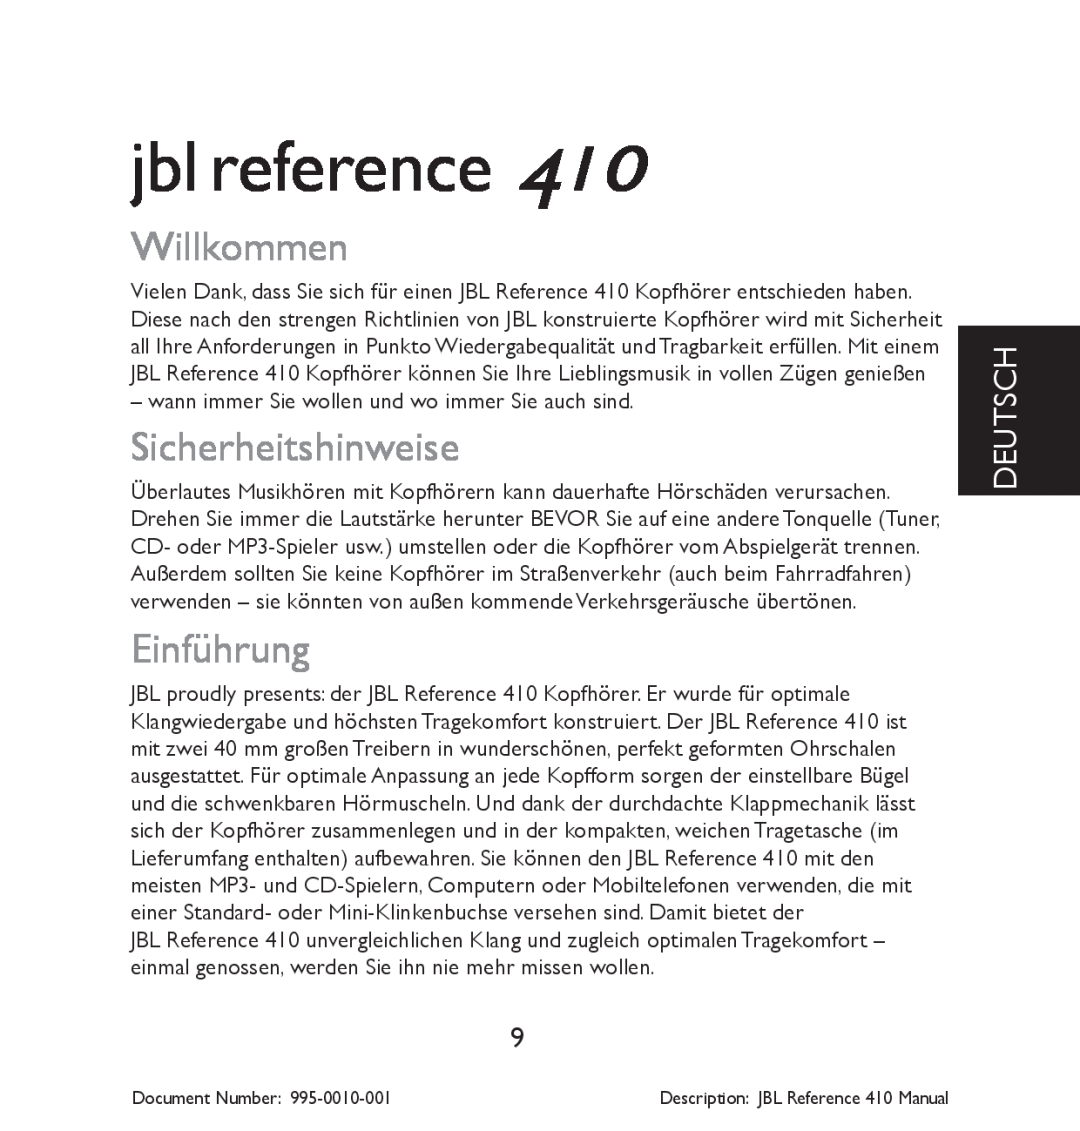 JBL 410 manual Willkommen, Sicherheitshinweise, Einführung, Deutsch, jbl reference 